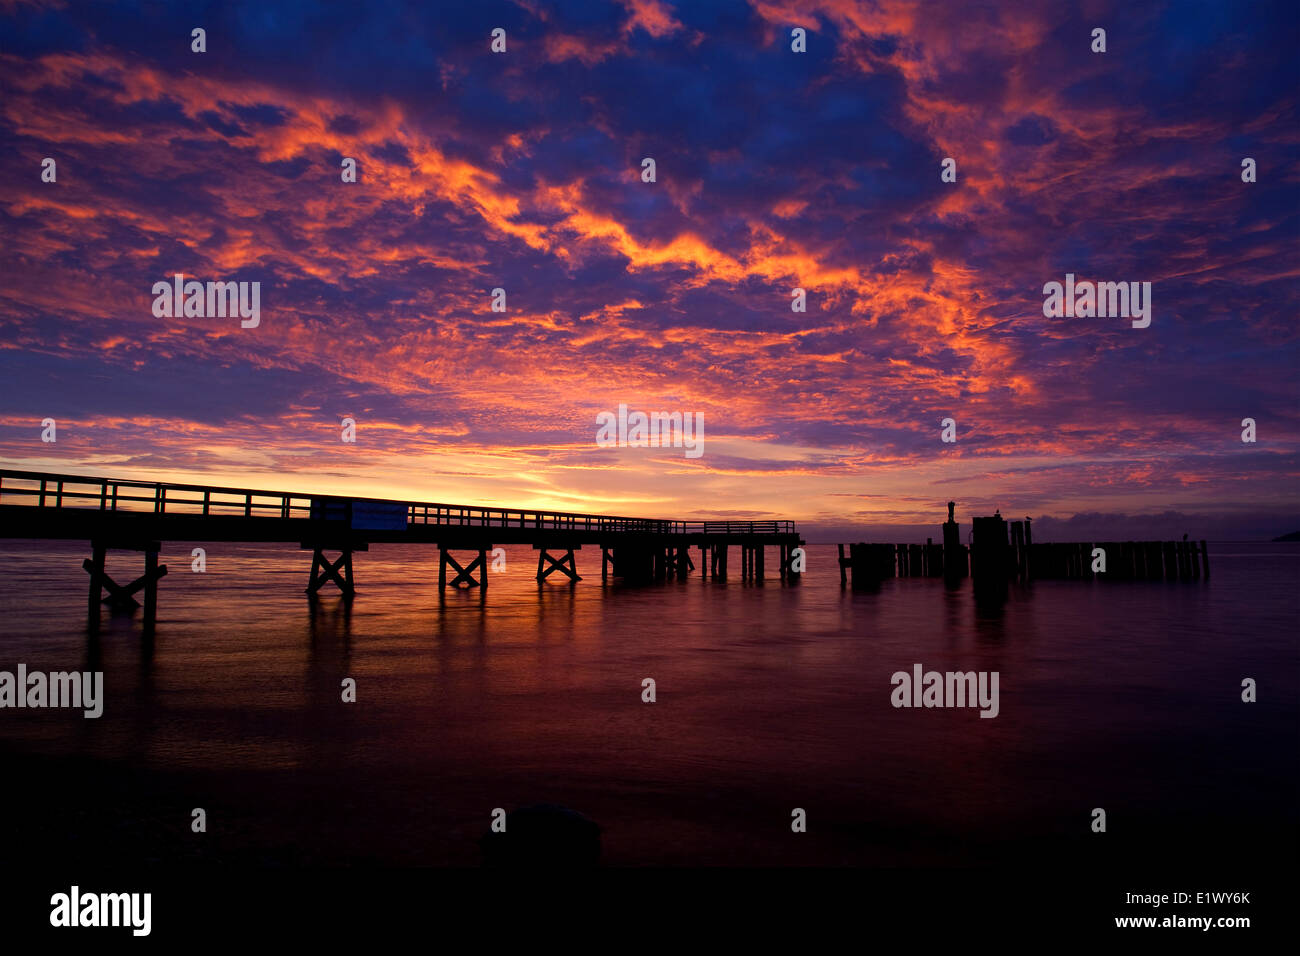 Davis Bay Pier, puesta de sol, Stormclouds, cielo de invierno, Sechelt, Sunshine Coast, A.C., el Salish Mar, Estrecho de Georgia Foto de stock